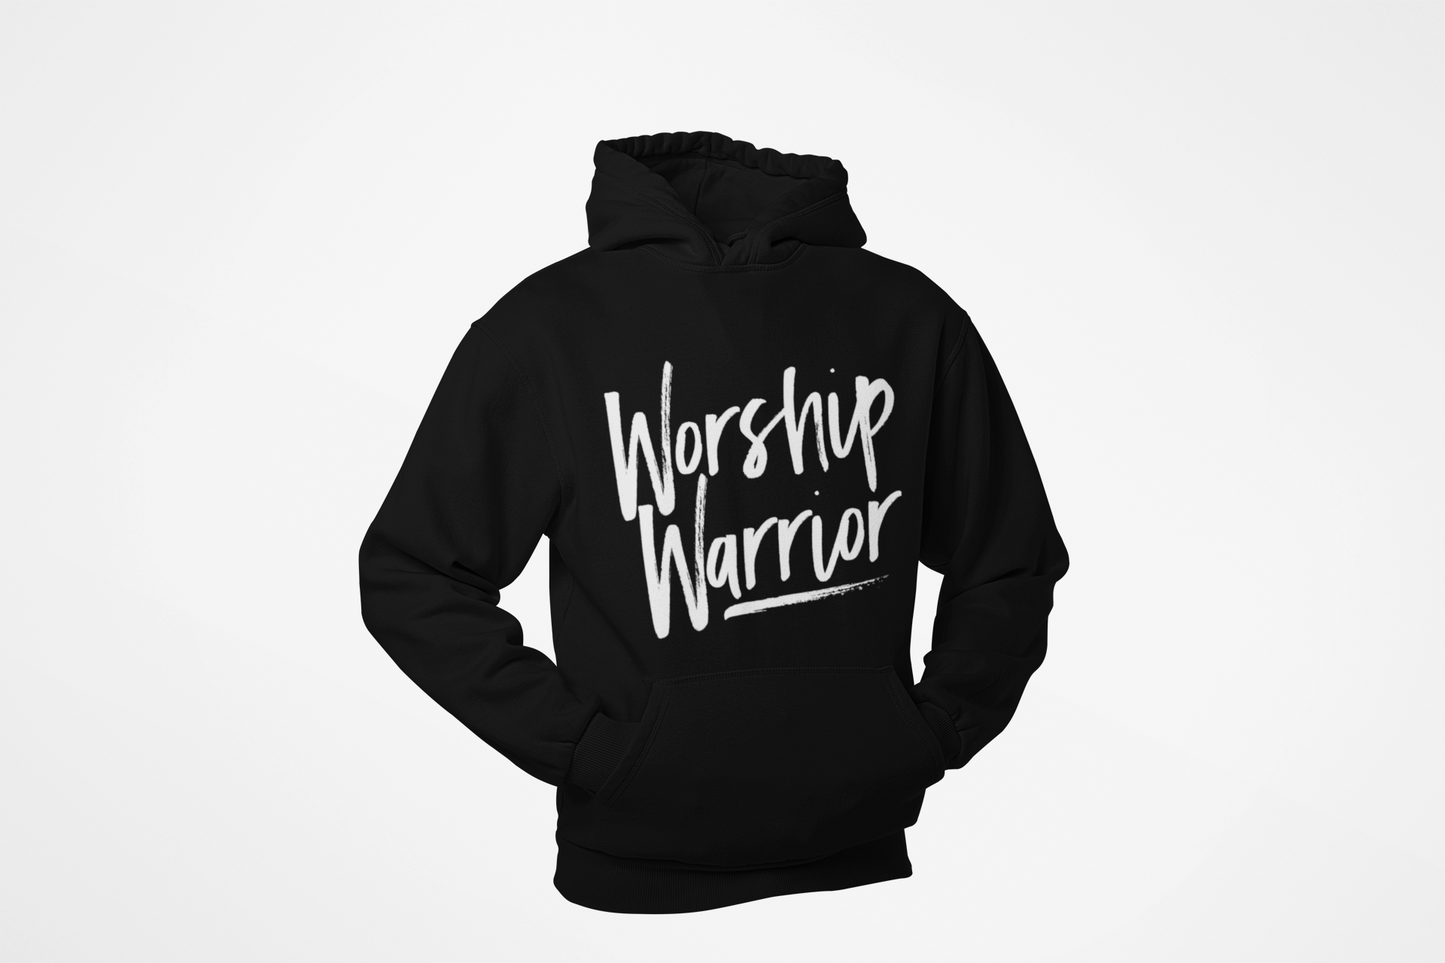 Worship Warrior Hoodie